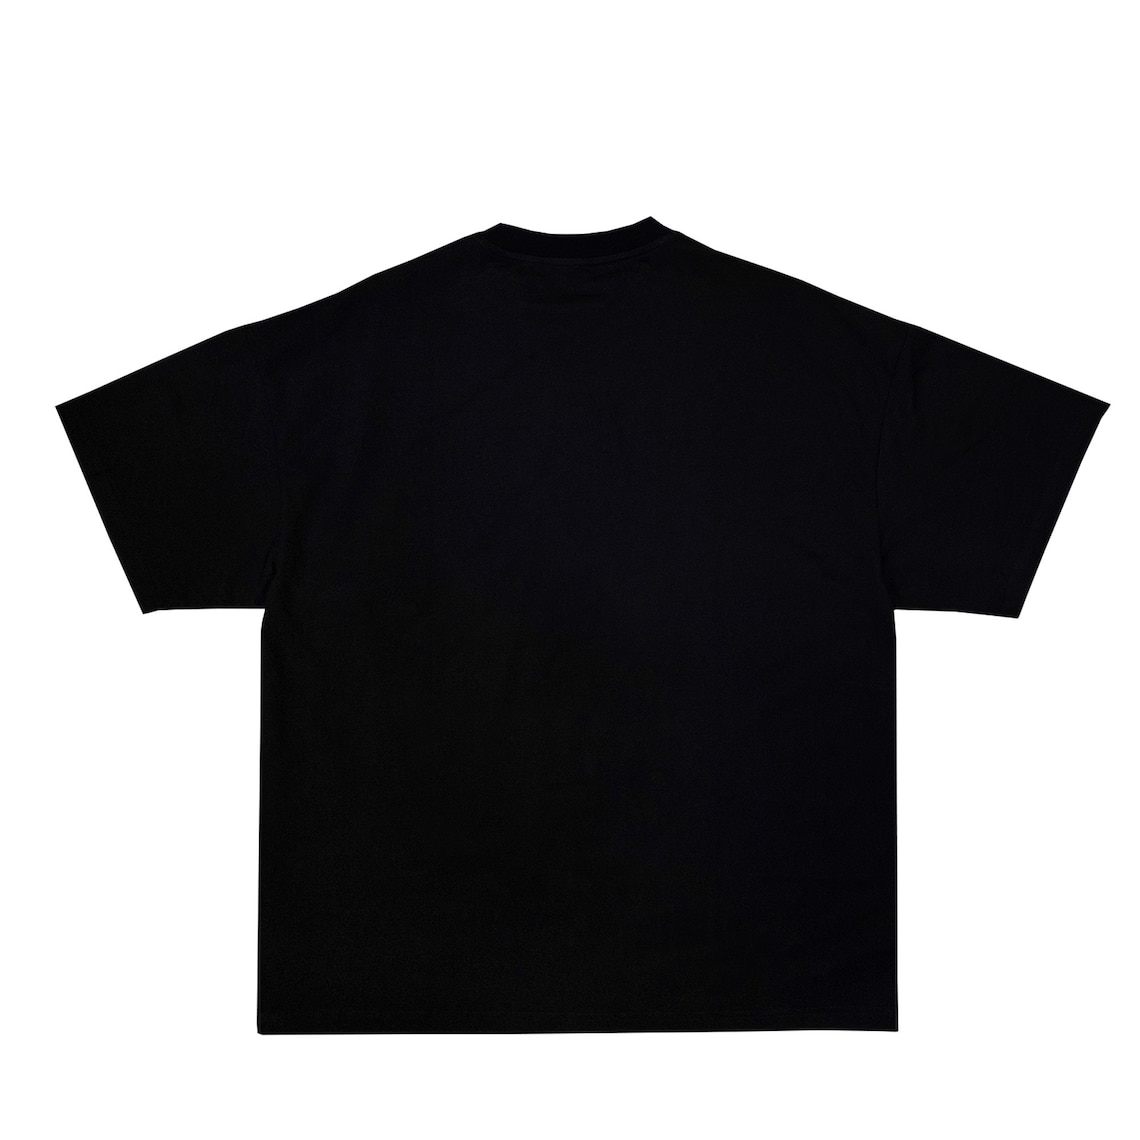 Black T-shirt Mock-ups Digital File - Etsy